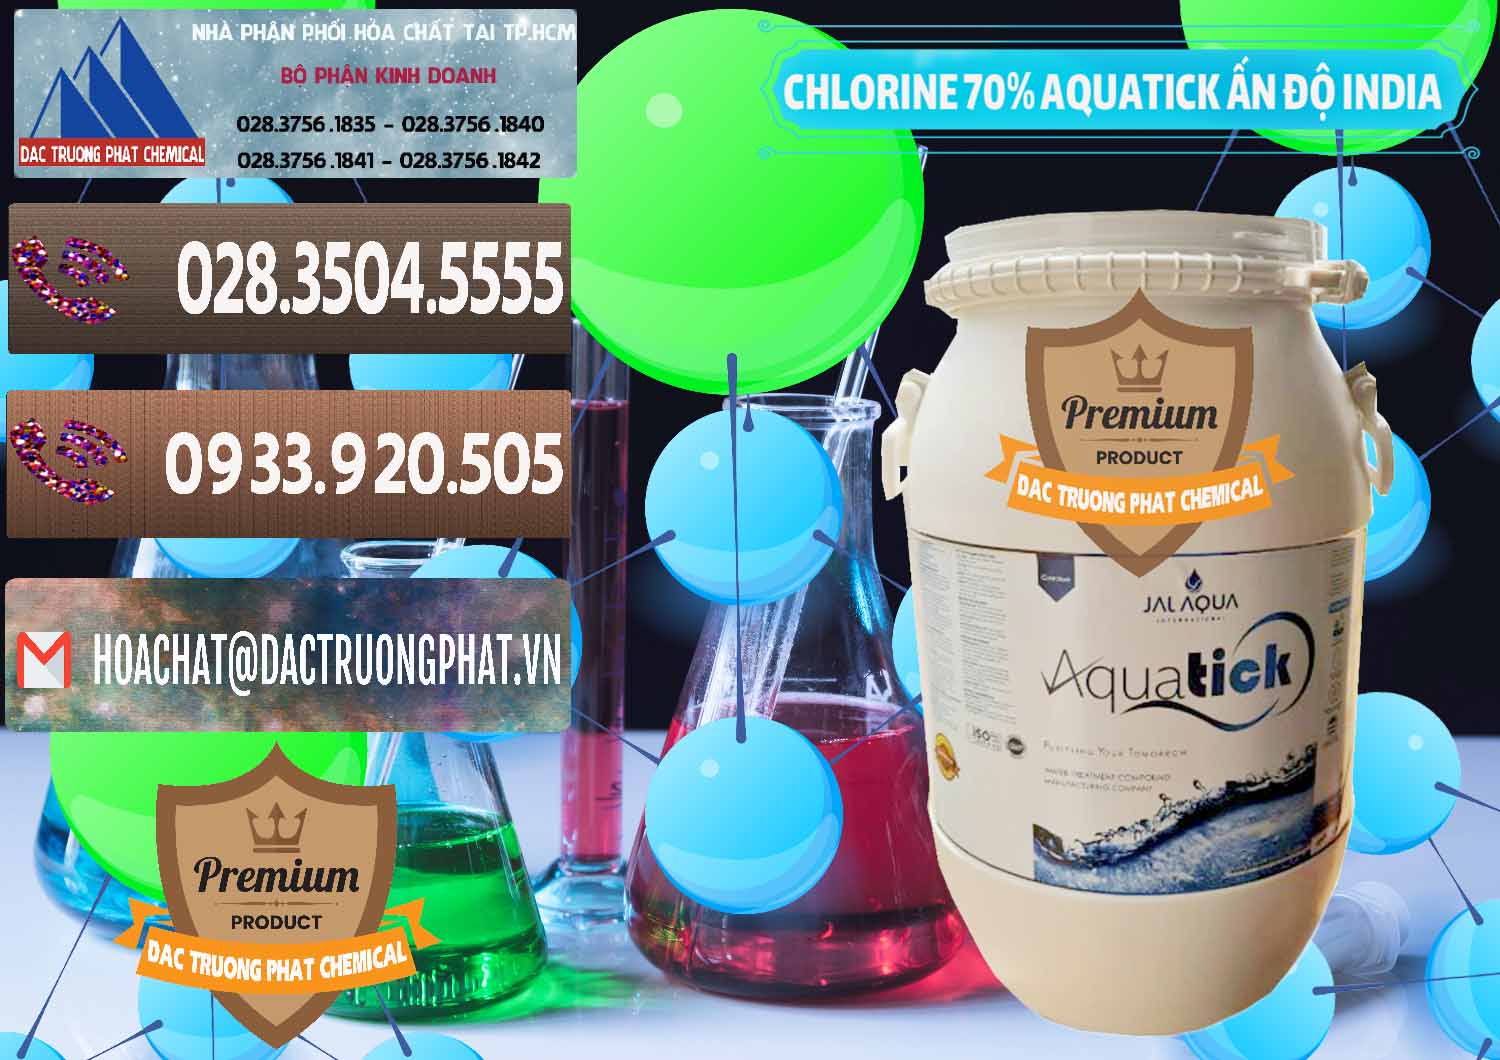 Công ty chuyên cung cấp & bán Chlorine – Clorin 70% Aquatick Jal Aqua Ấn Độ India - 0215 - Nhà nhập khẩu và cung cấp hóa chất tại TP.HCM - hoachatviet.net